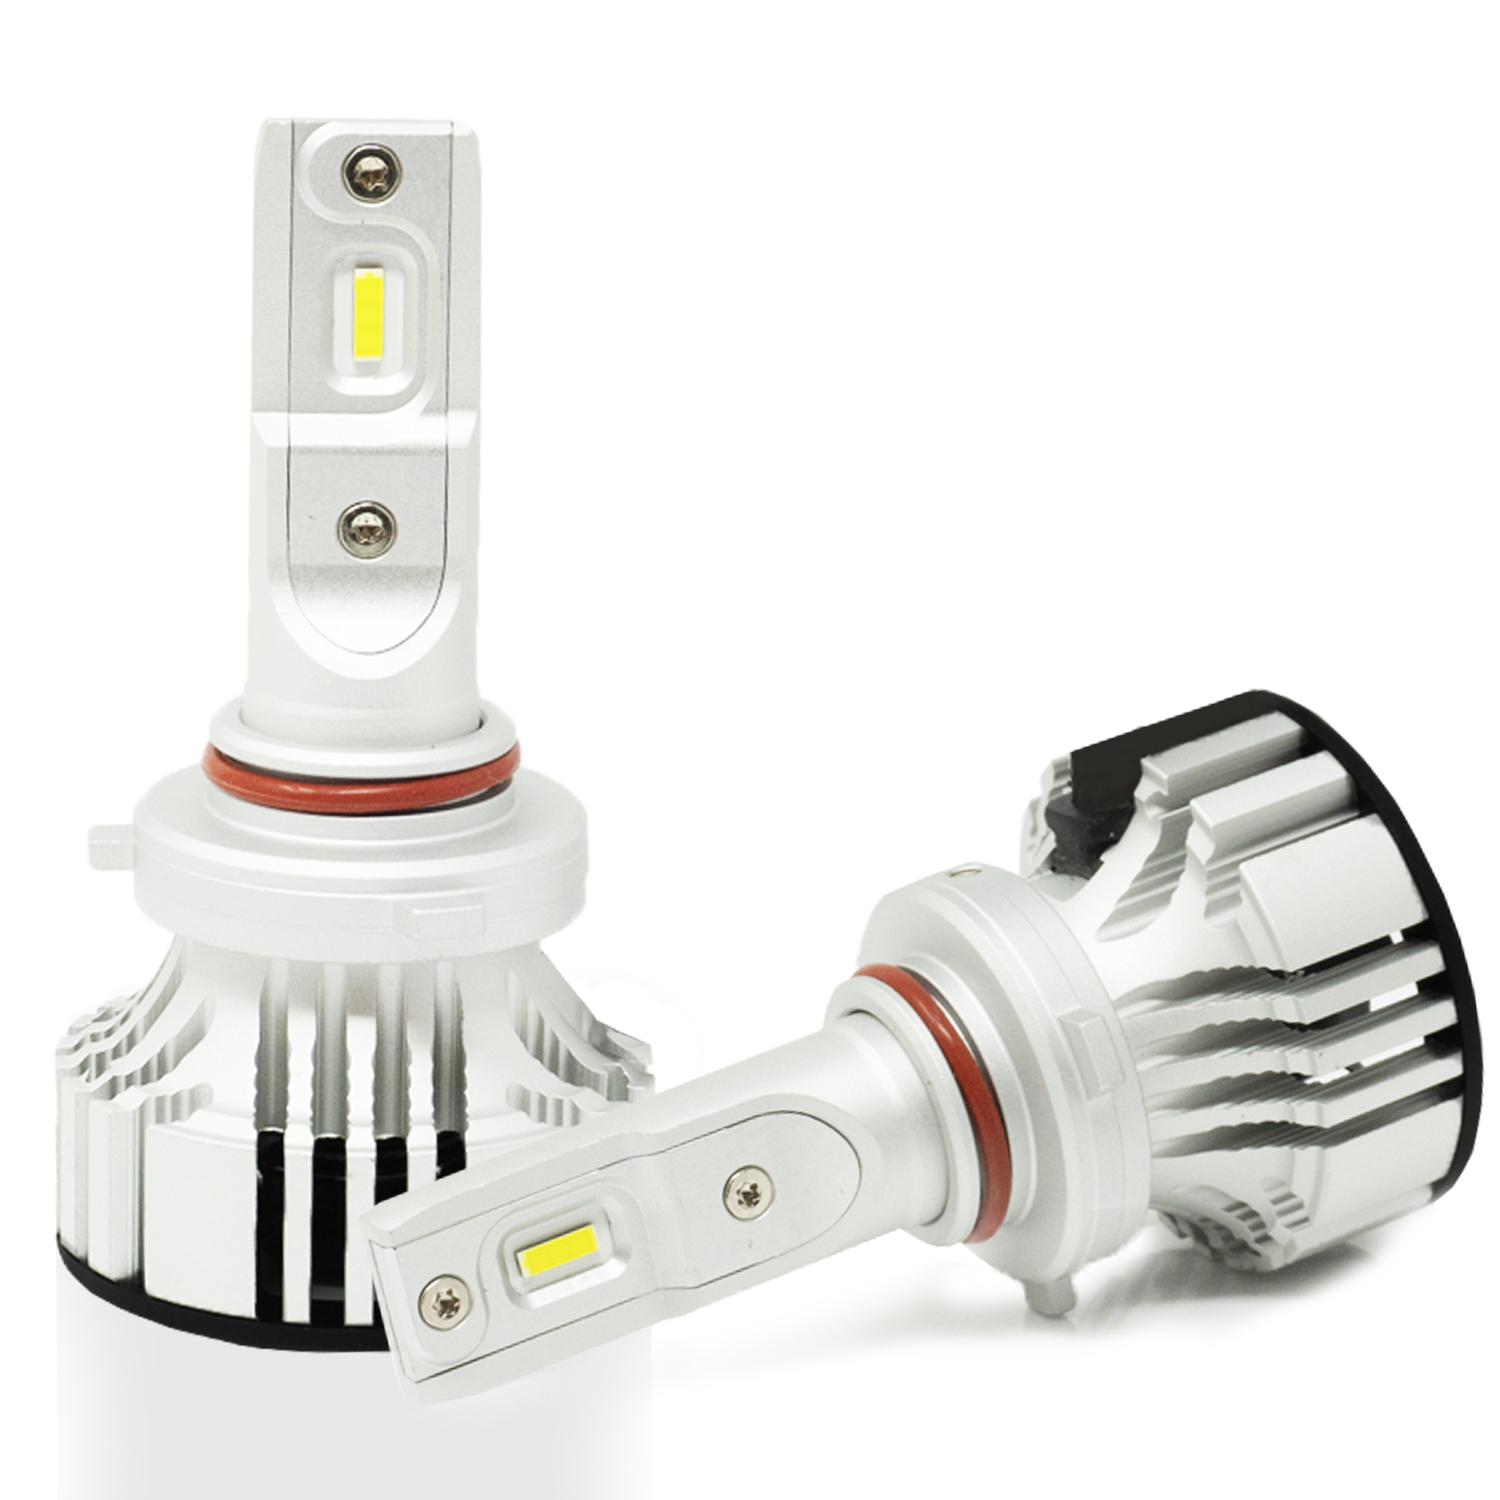 Automotive LED Daytime Running Light Bulb for cars, trucks